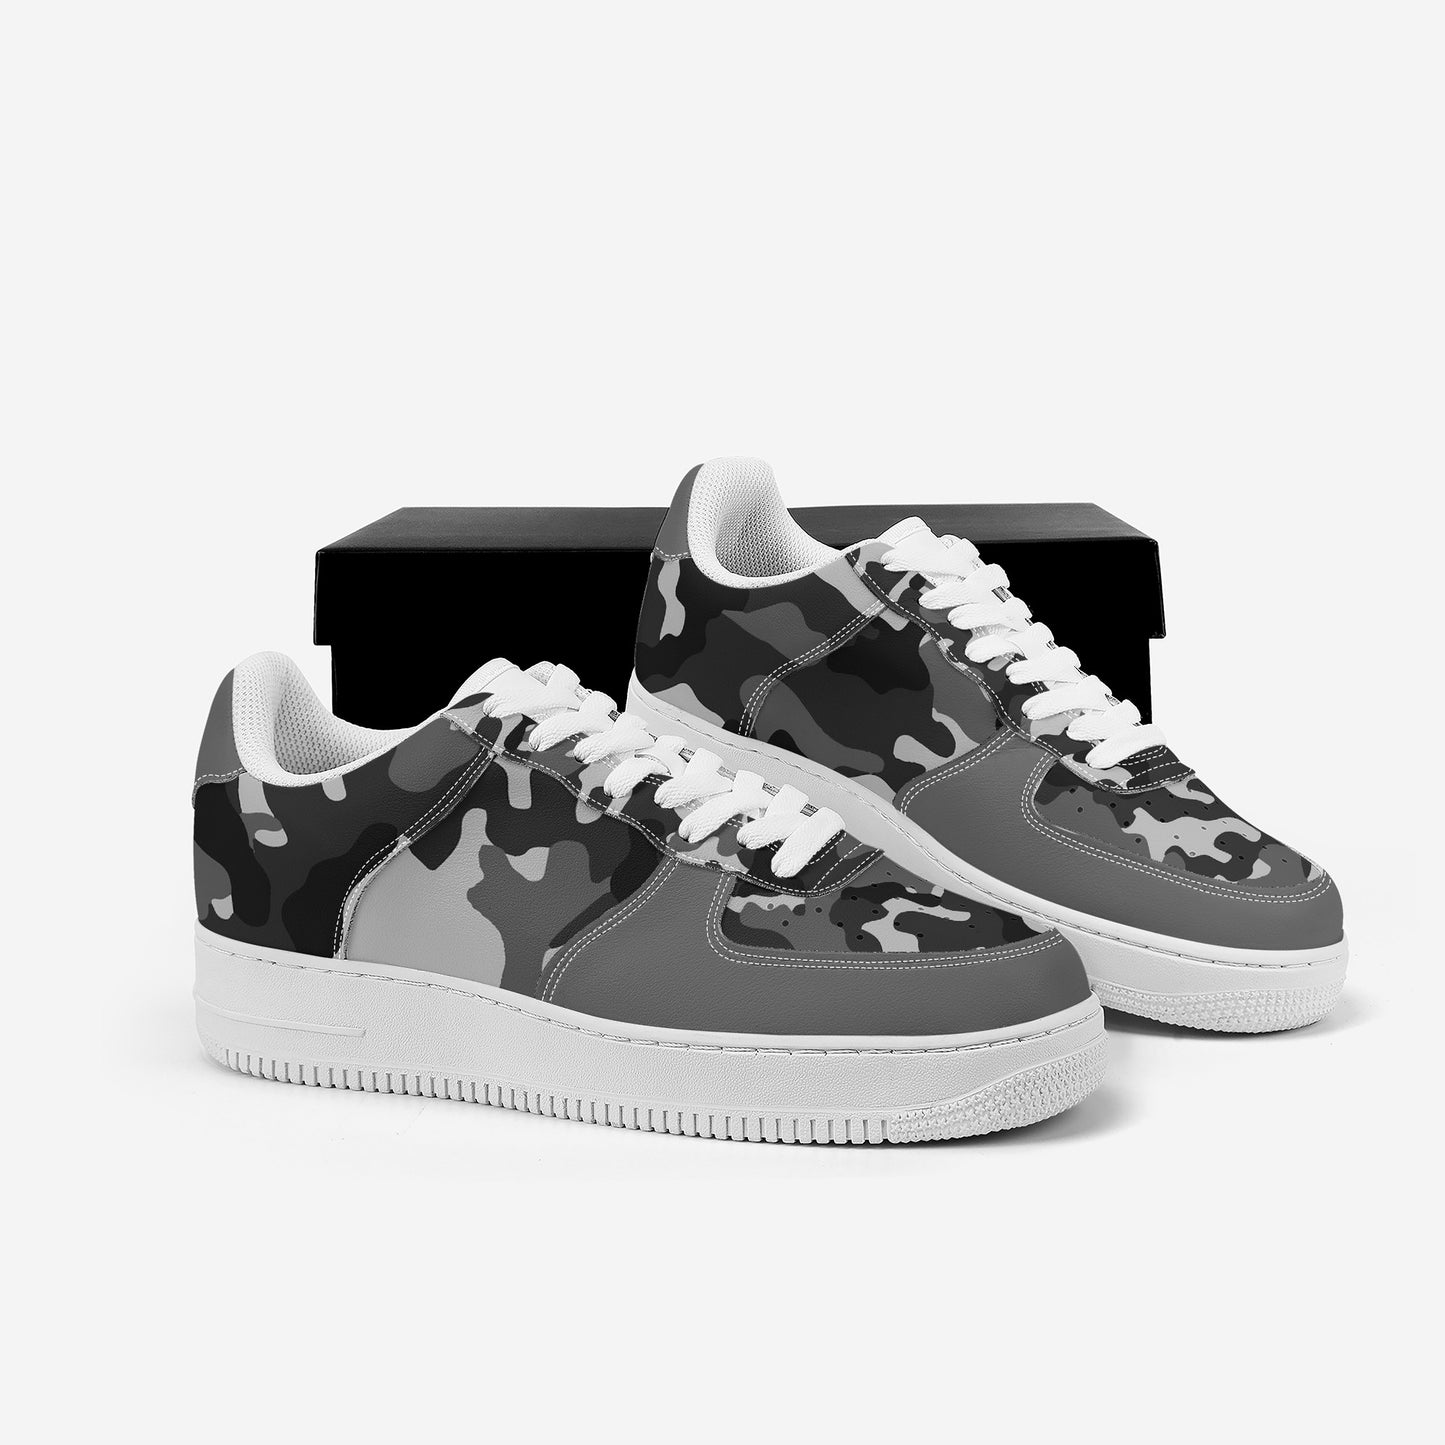 Low Top Unisex Sneaker - Grey